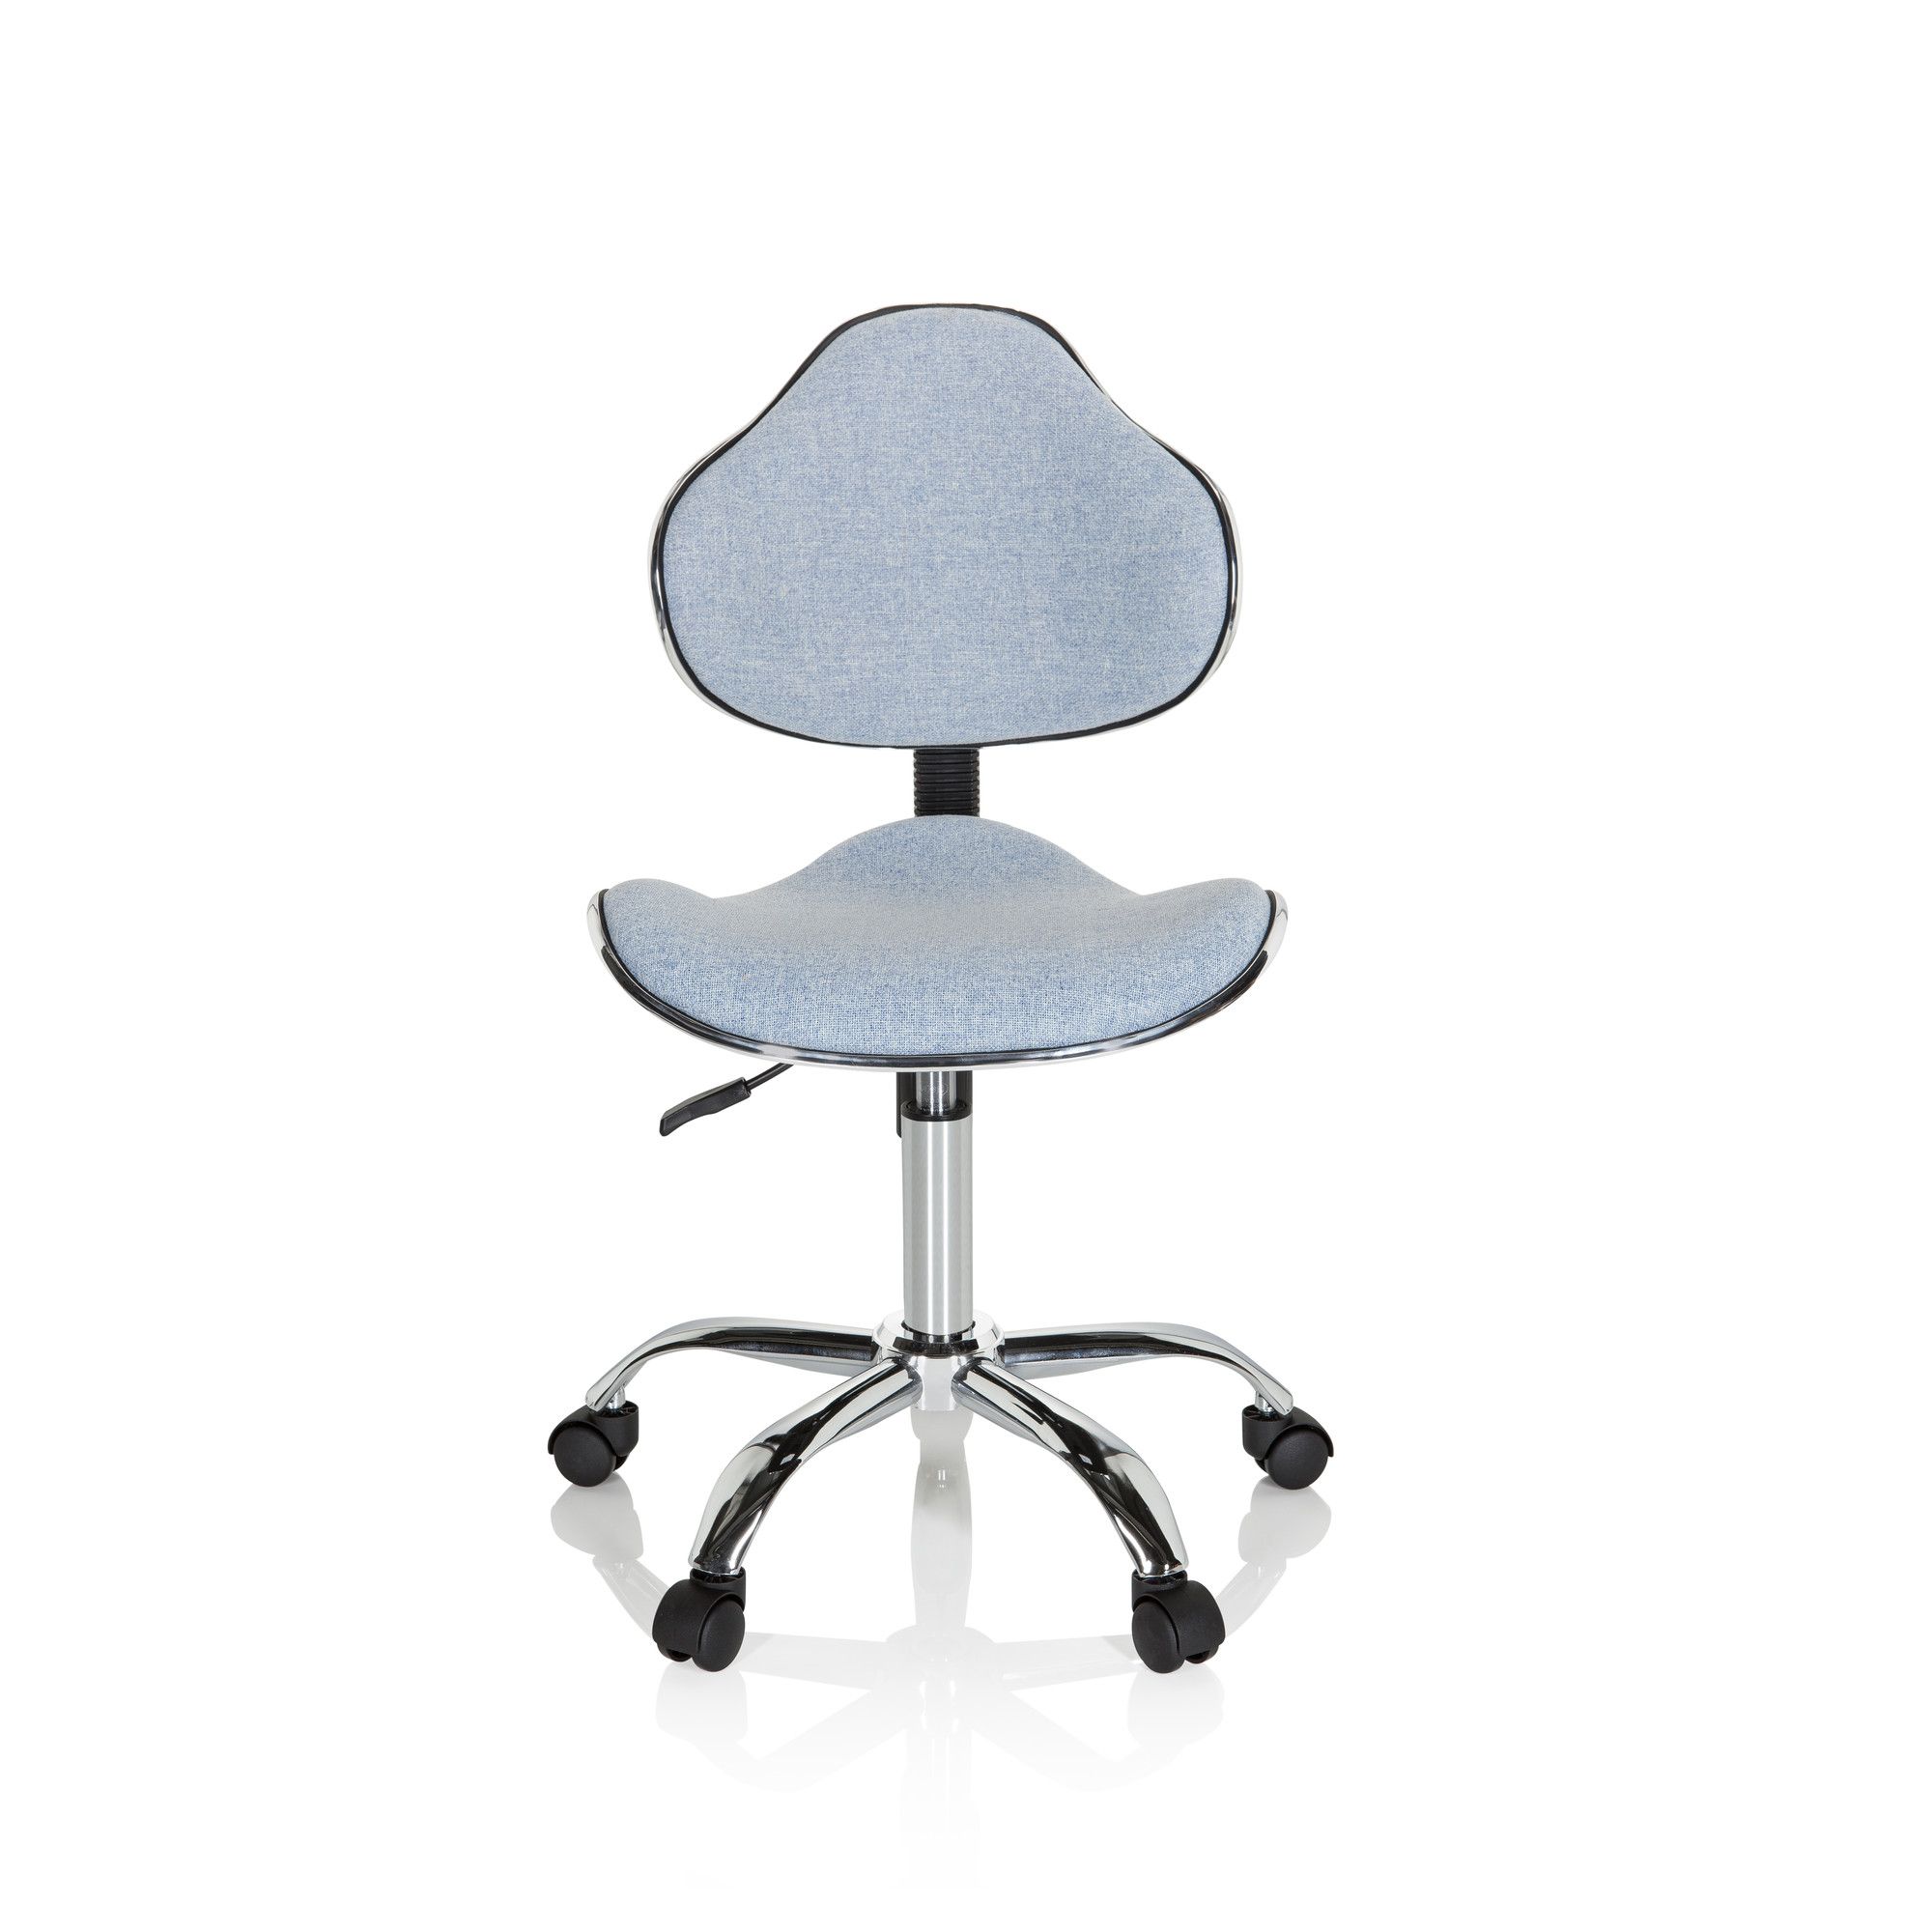 chaise de bureau pour enfant kiddy gti-3 tissu bleu - hjh office - ergonomique - assise active - design coque